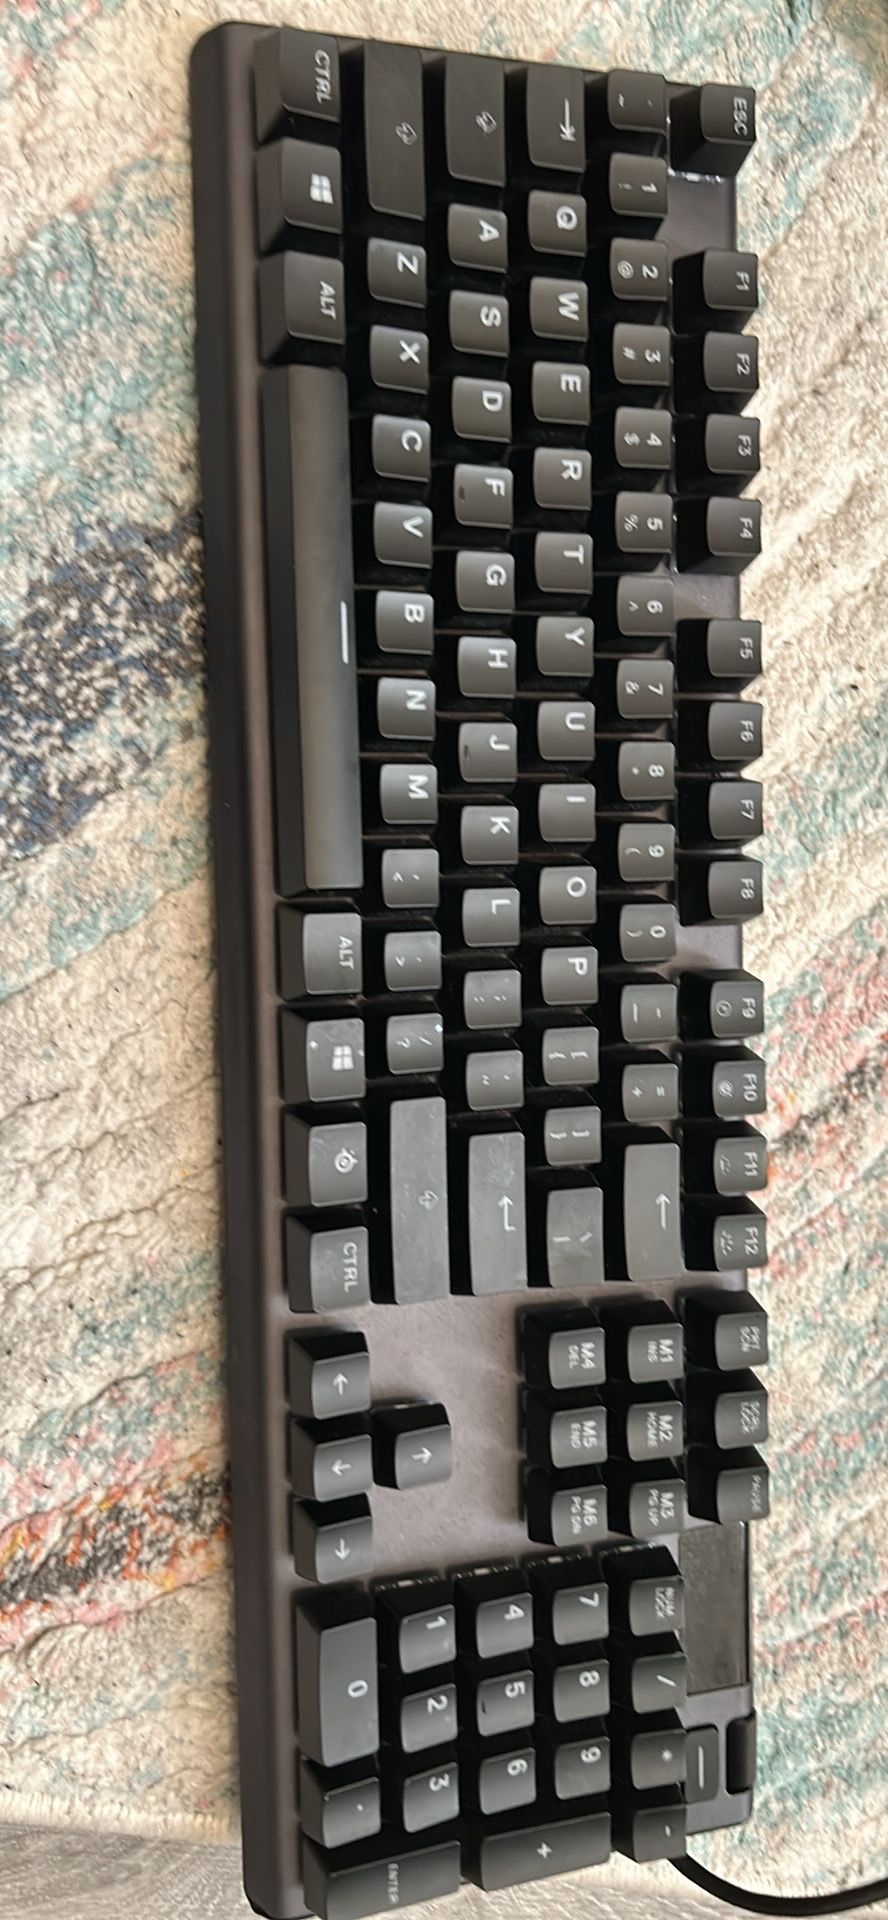 SteelSeries Apex 5 (64532) Wired Keyboard